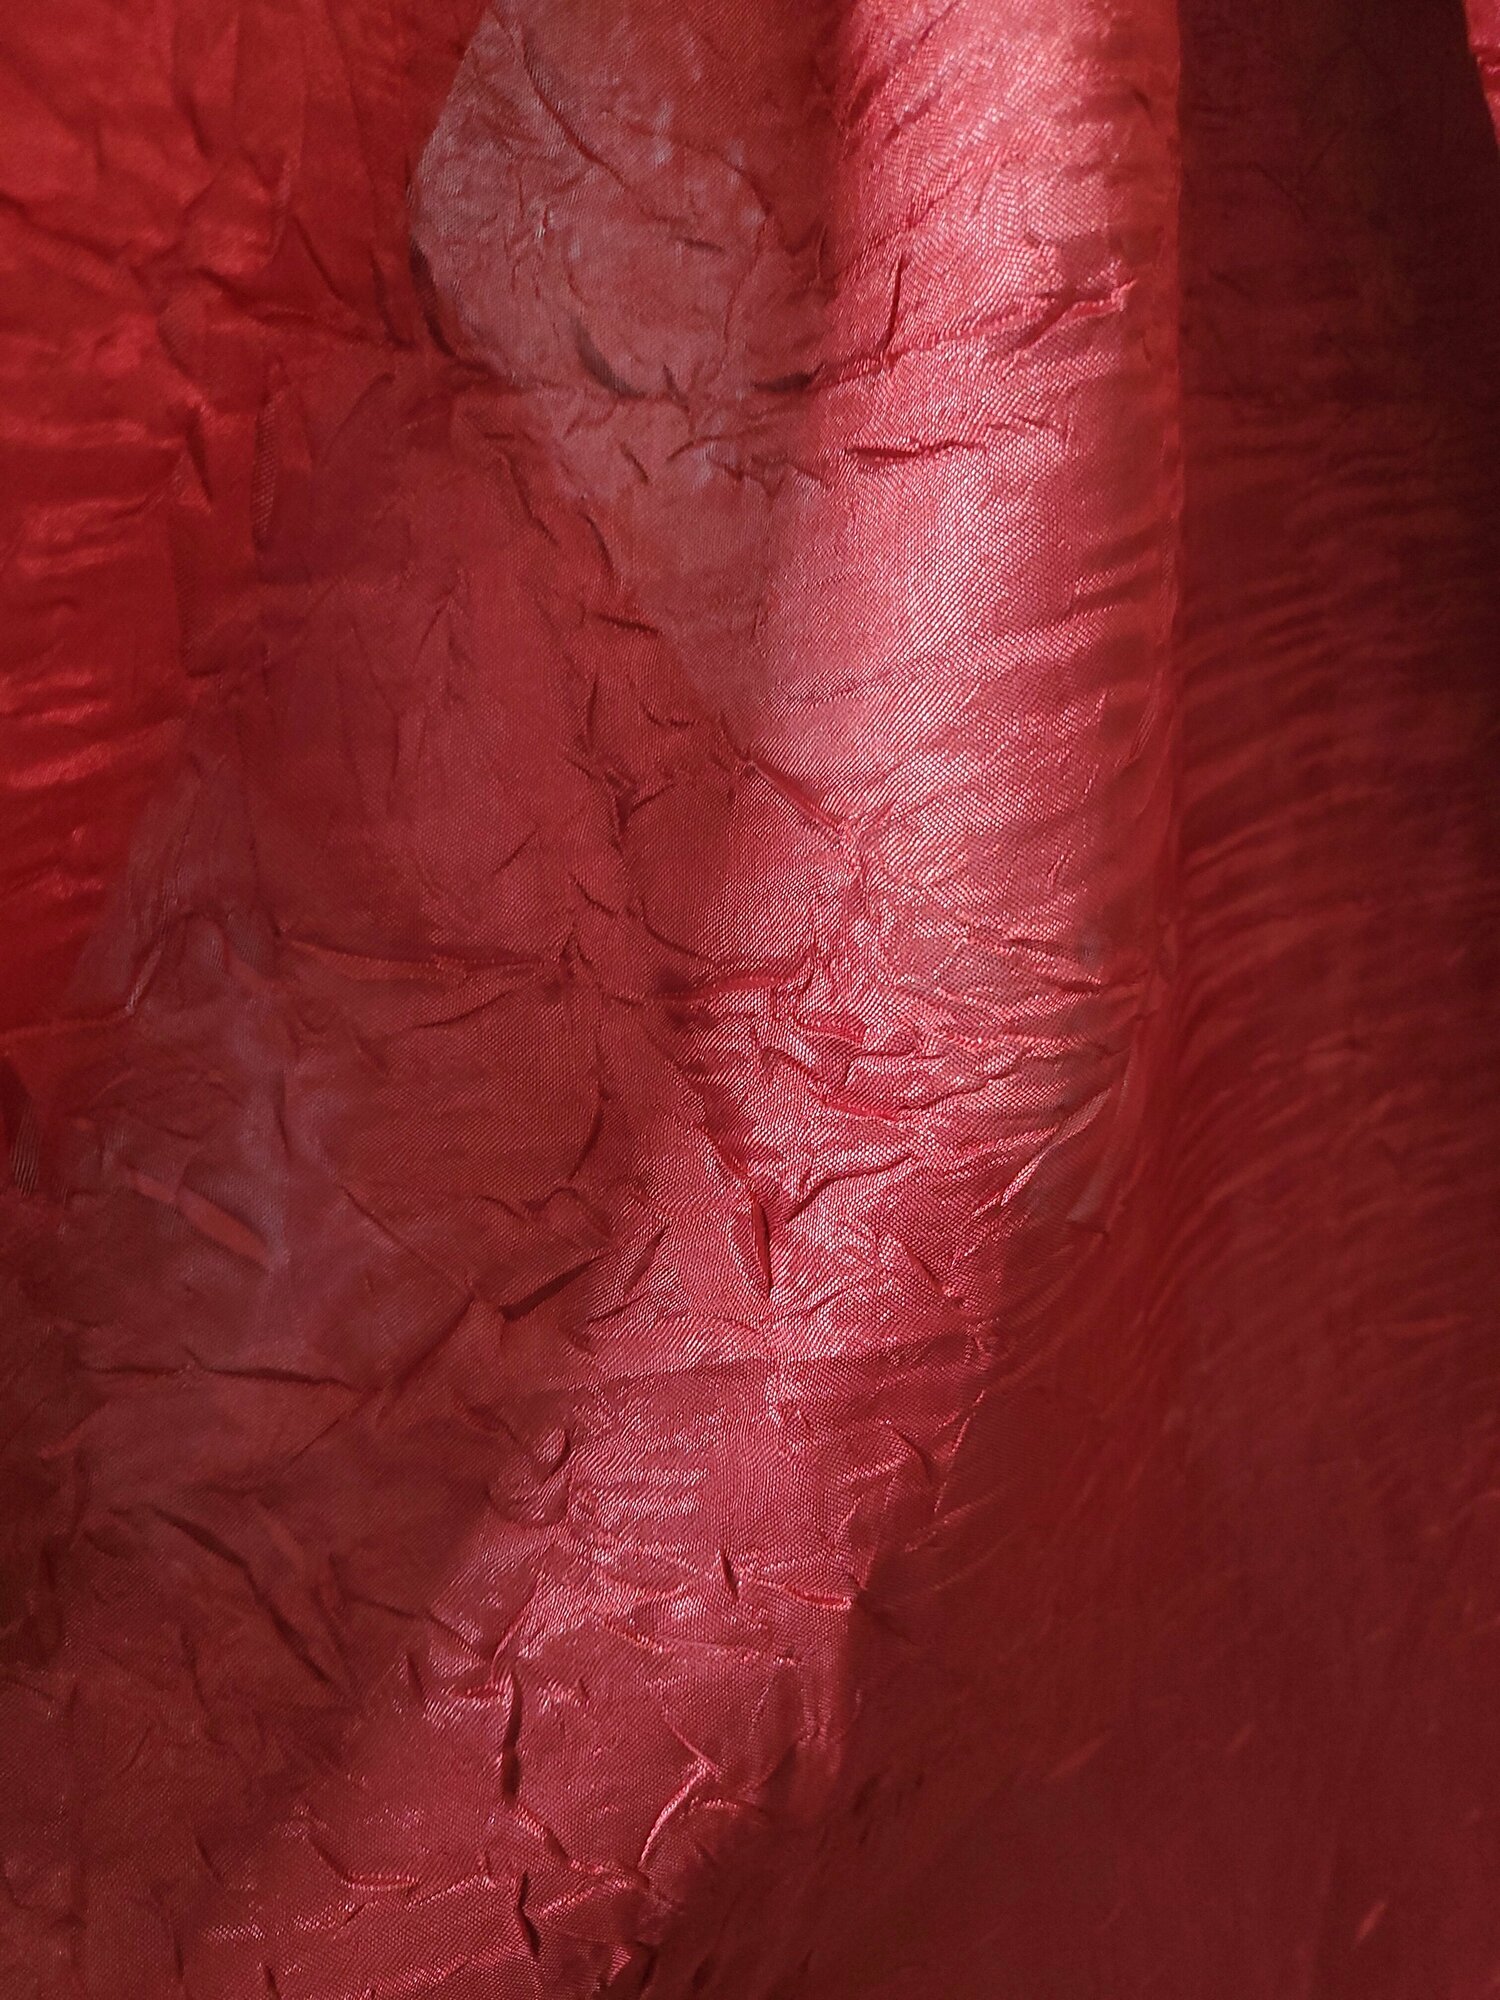 Тюль для комнаты батист жатка 250 см высота 300 см ширина на шторной ленте цвет бордовый